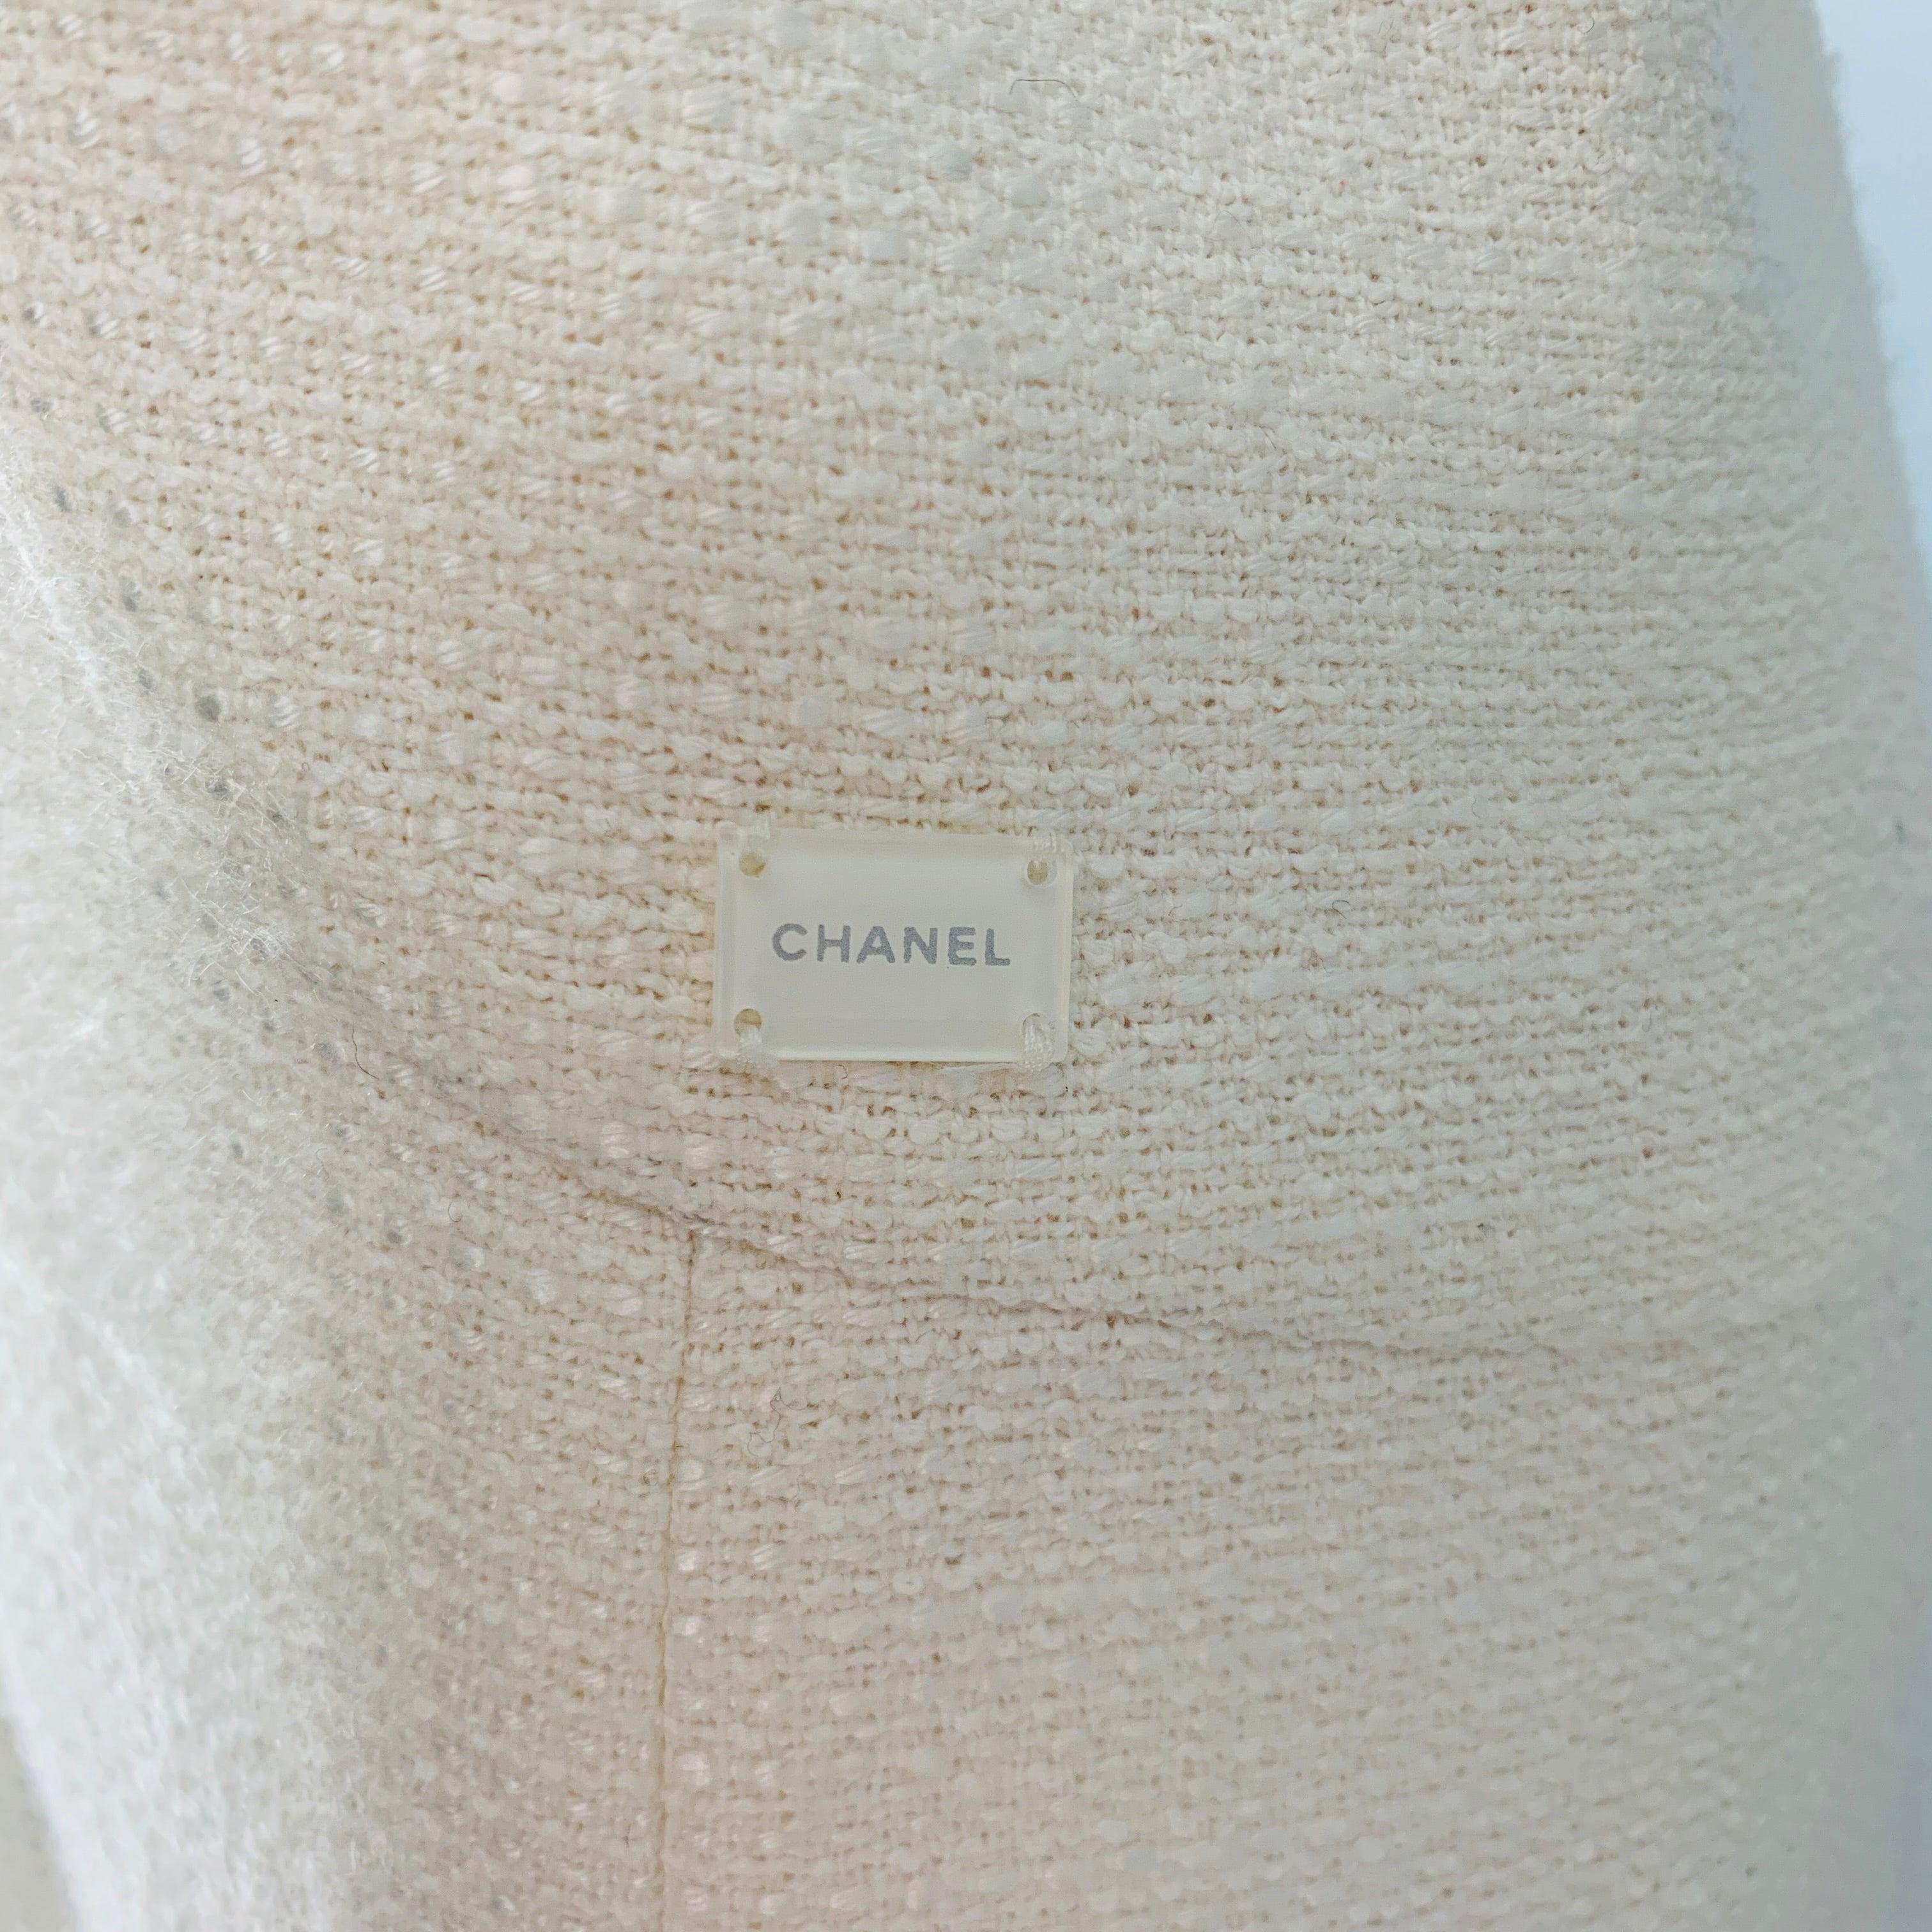 CHANEL 2004 Kleid aus cremefarbener Baumwolle und Acetat mit folgenden Eigenschaften: Shift-Stil, ausgefranste Kante, Mitte der Wade, ärmellos, Reißverschluss hinten. Hergestellt in Frankreich. Sehr guter gebrauchter Zustand. Sehr schwache Flecken